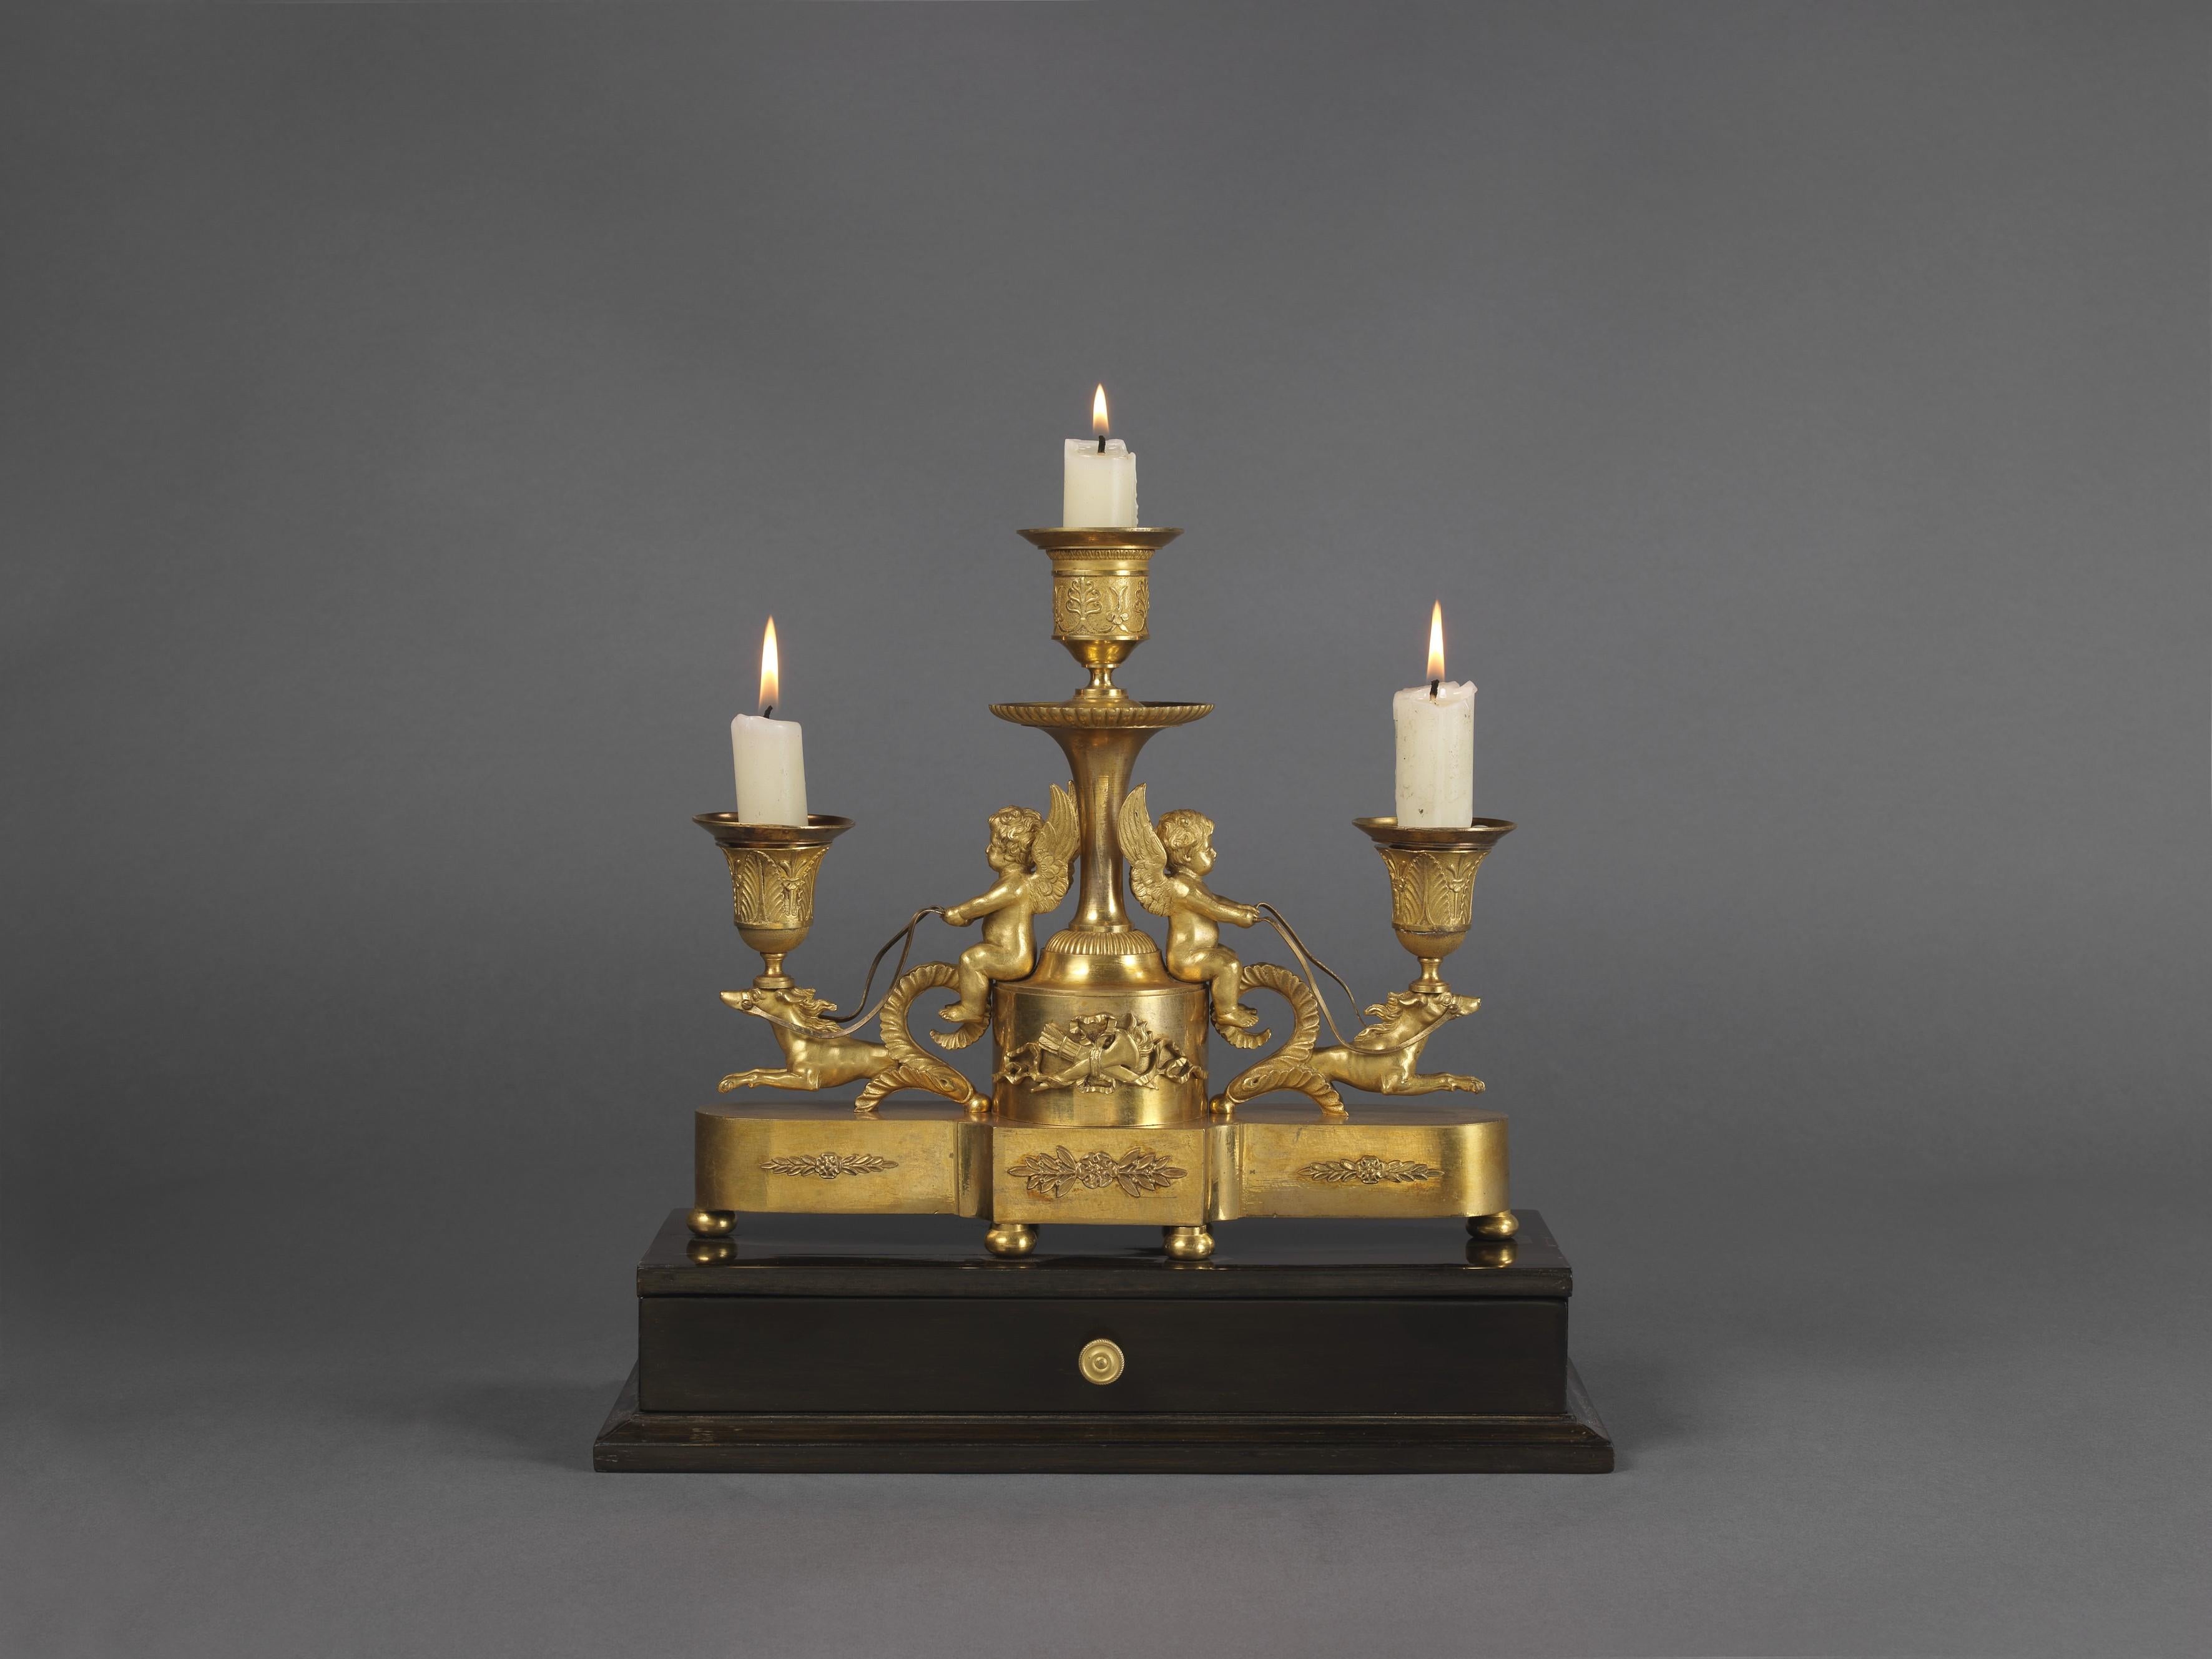 Un beau support de bureau à trois lampes de style Louis XVI en bronze doré et ébène.

Français, circa 1820. 

Cette élégante table de bureau présente une base rectangulaire ébénisée avec un tiroir, supportant une plinthe rentrante en bronze doré